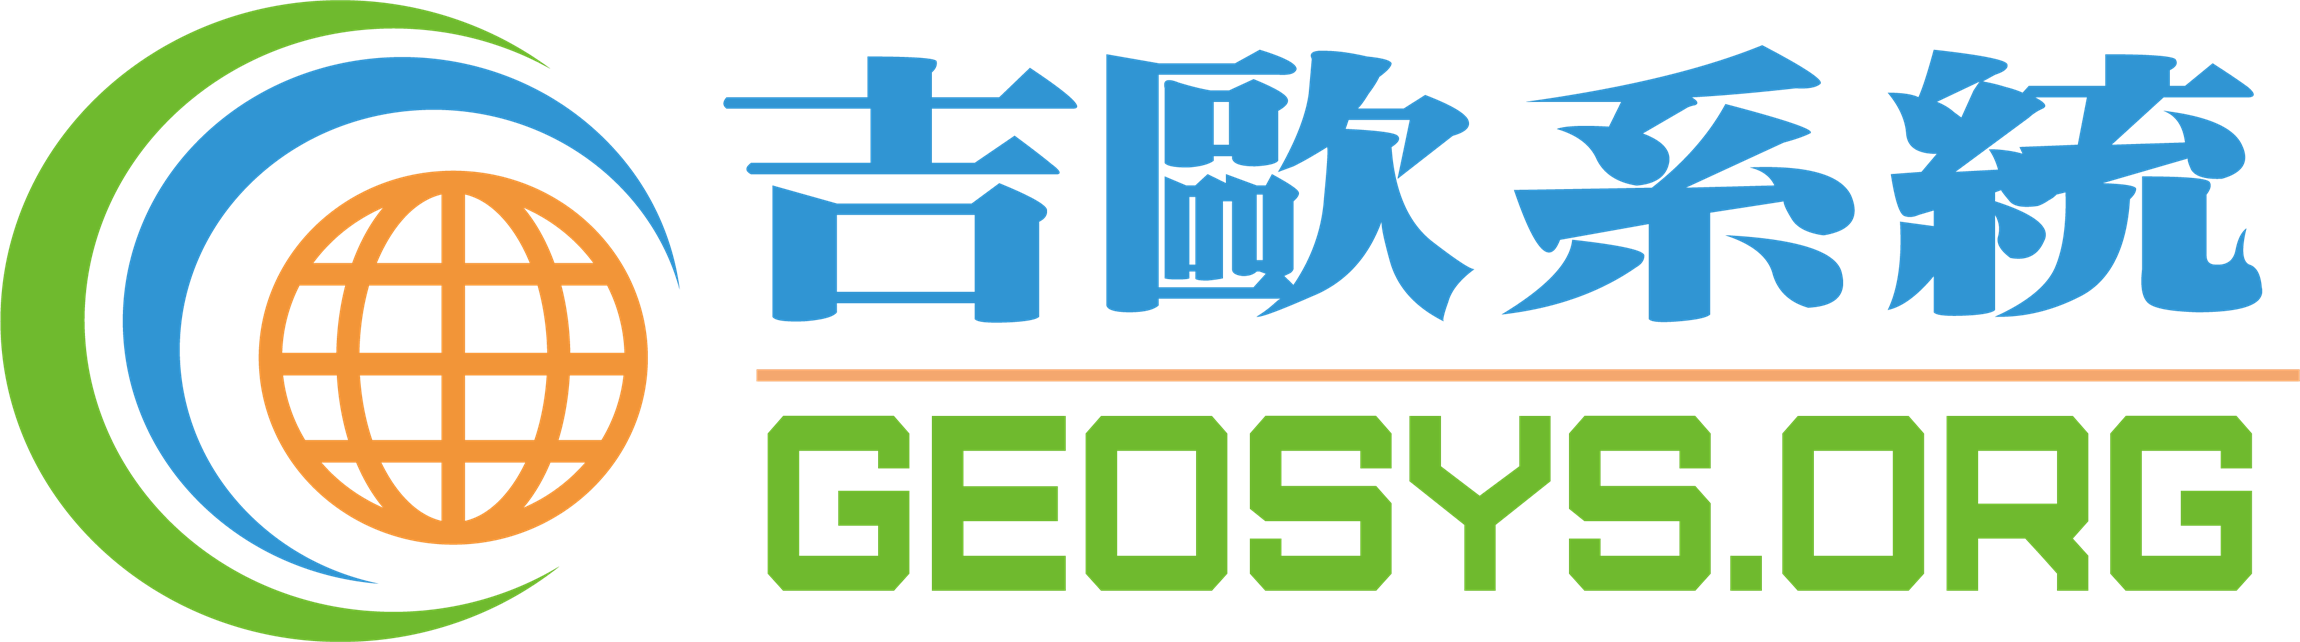 Self Photos / Files - geosys_吉欧系统_繁体LOGO